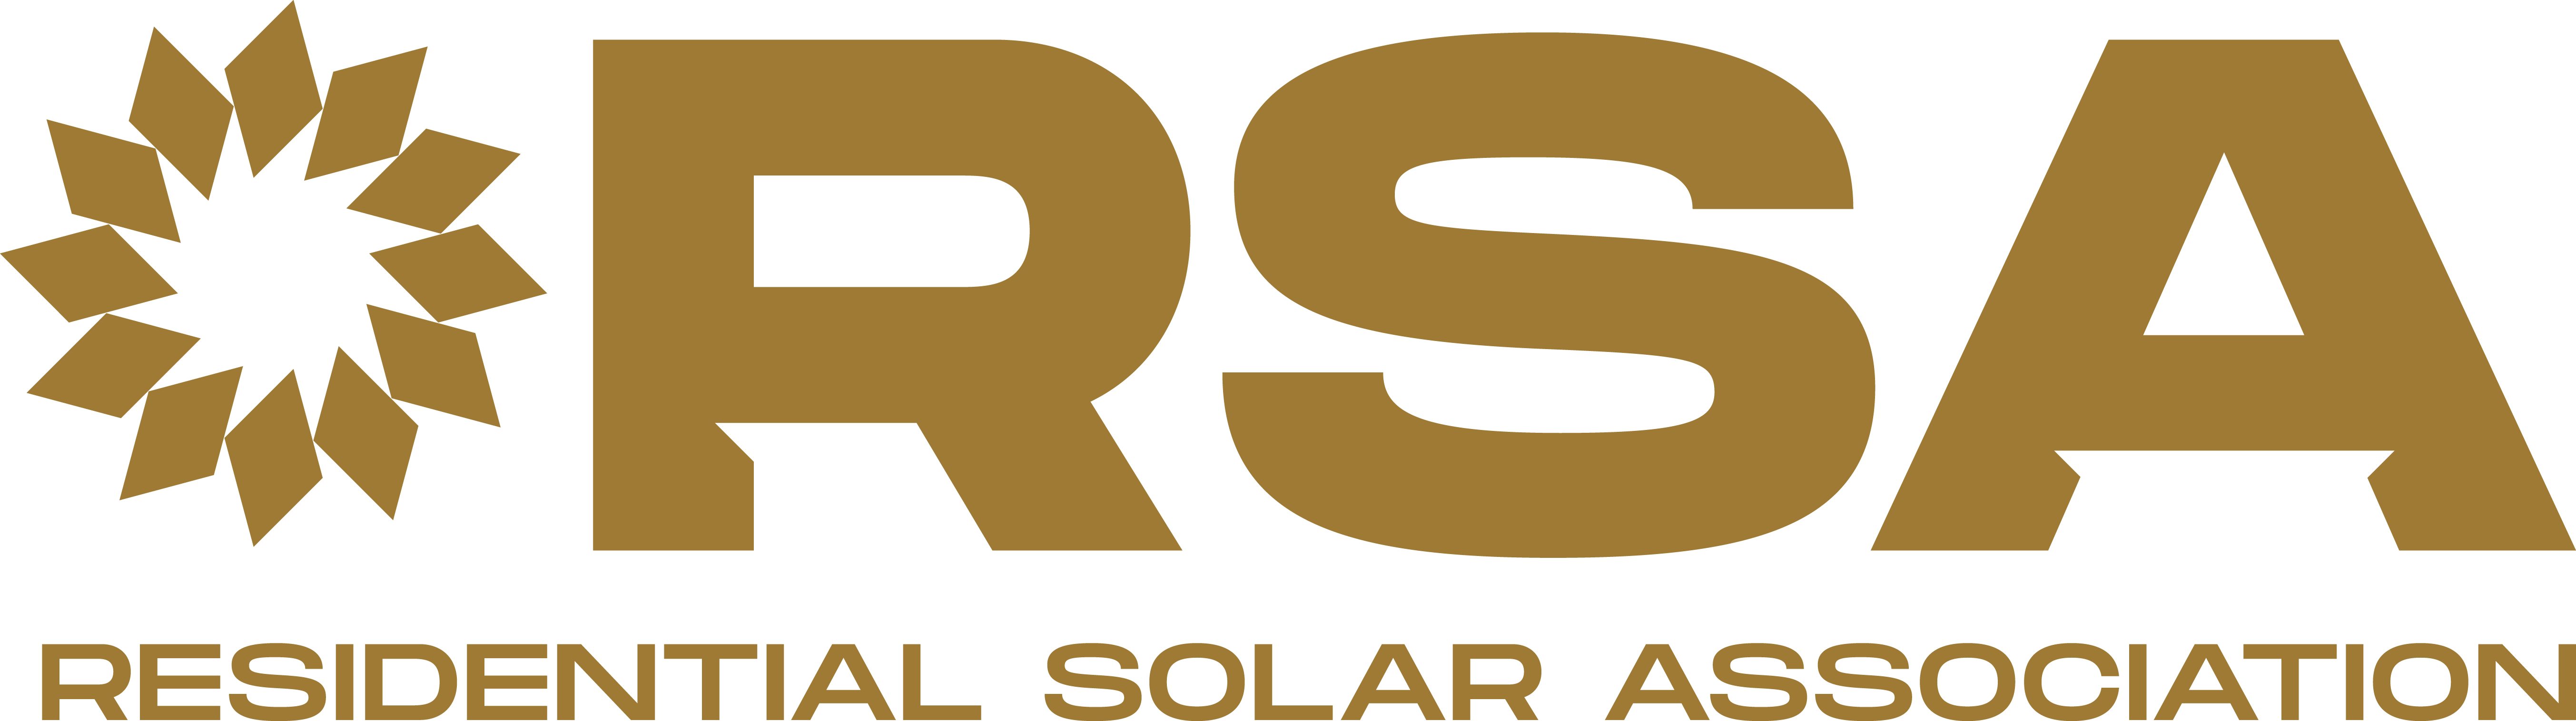 Residential Solar Association